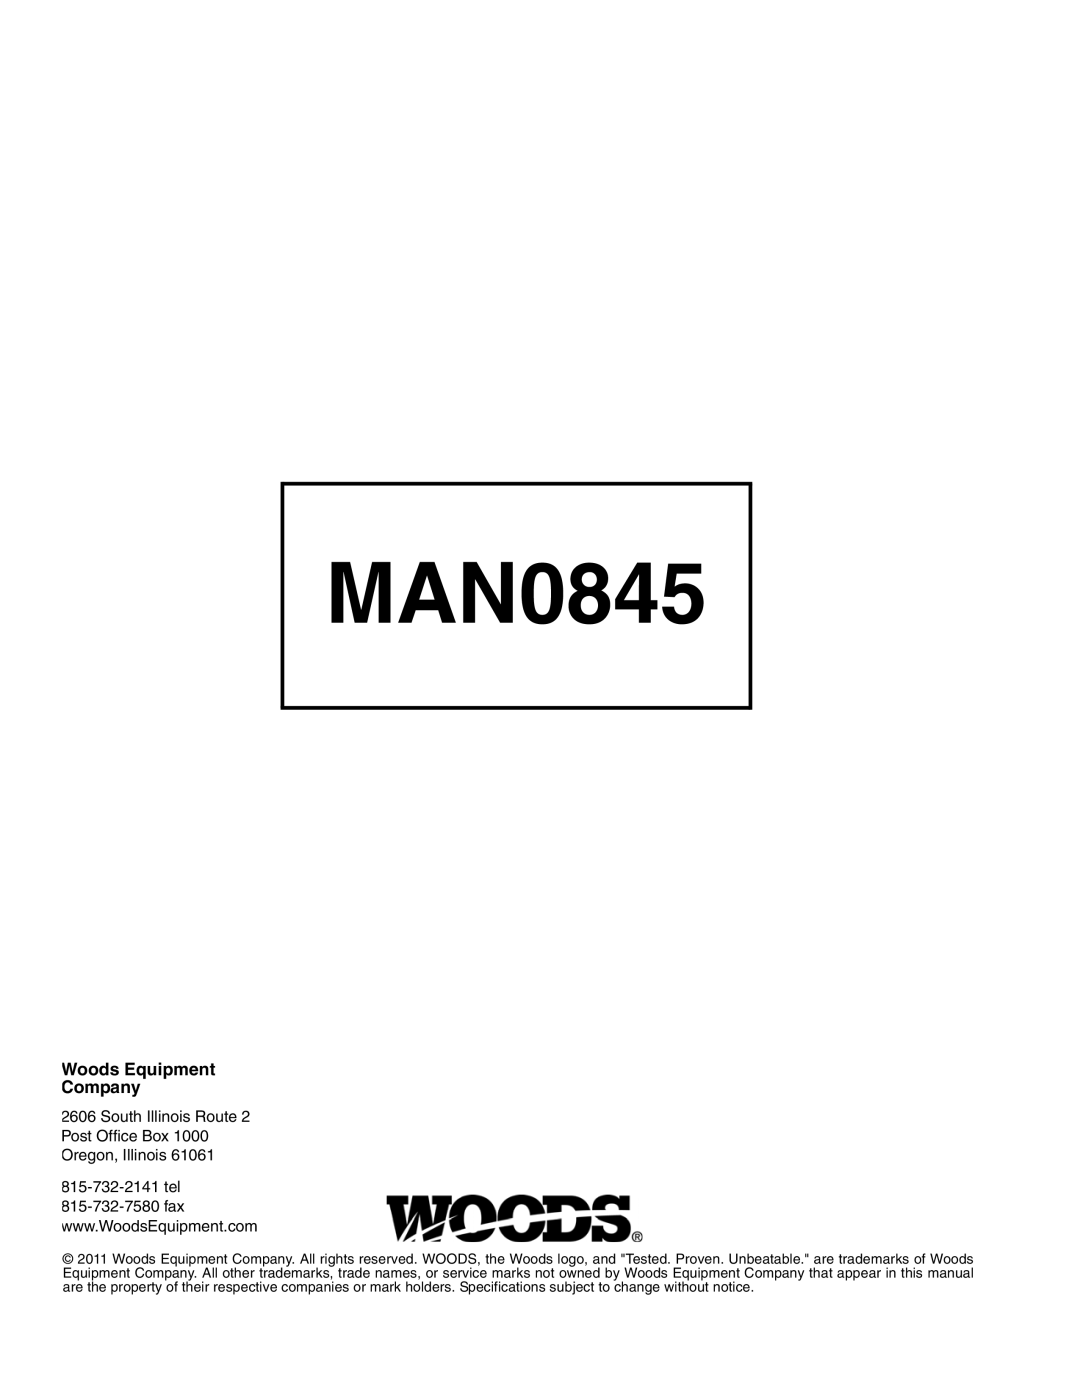 Woods Equipment RD990X manual MAN0845, Woods Equipment Company 